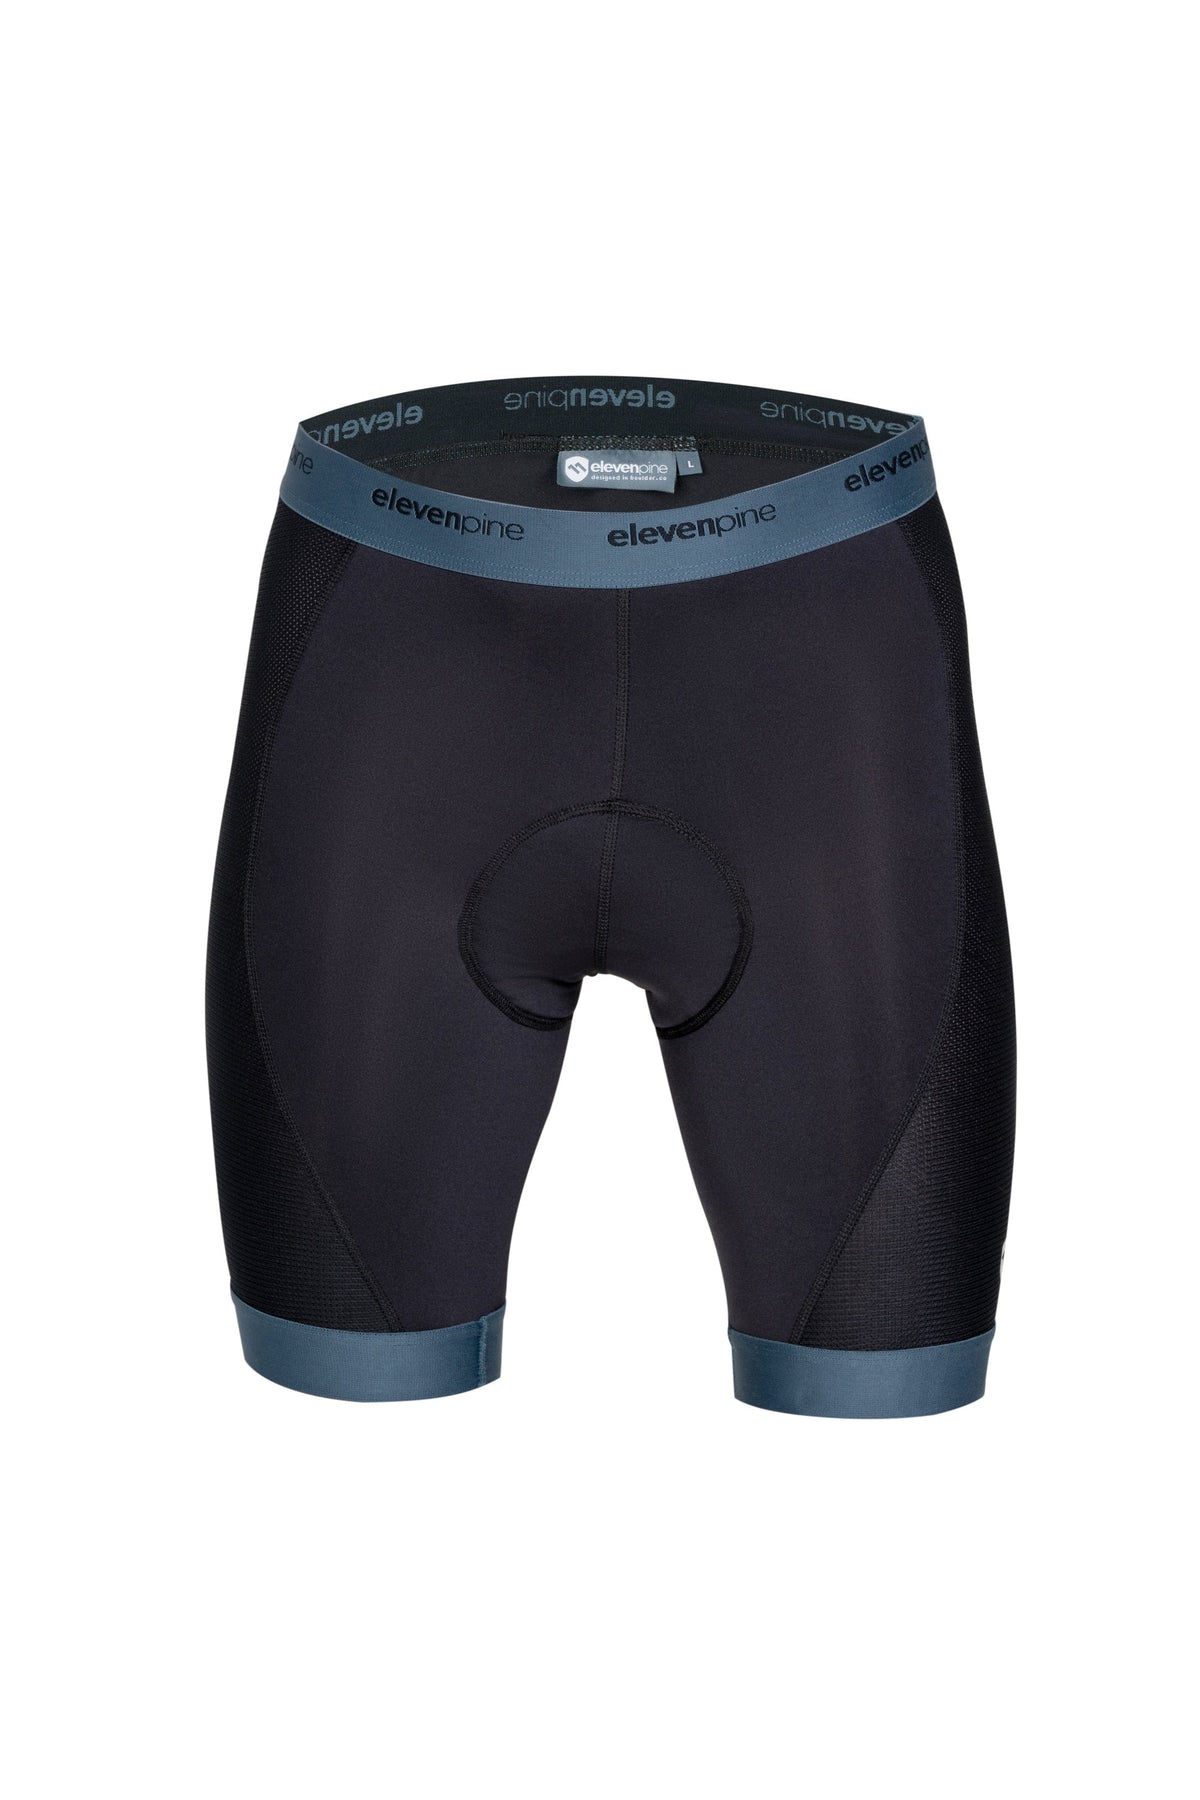 Liberator Liner for Men-Shorts-ELEVENPINE